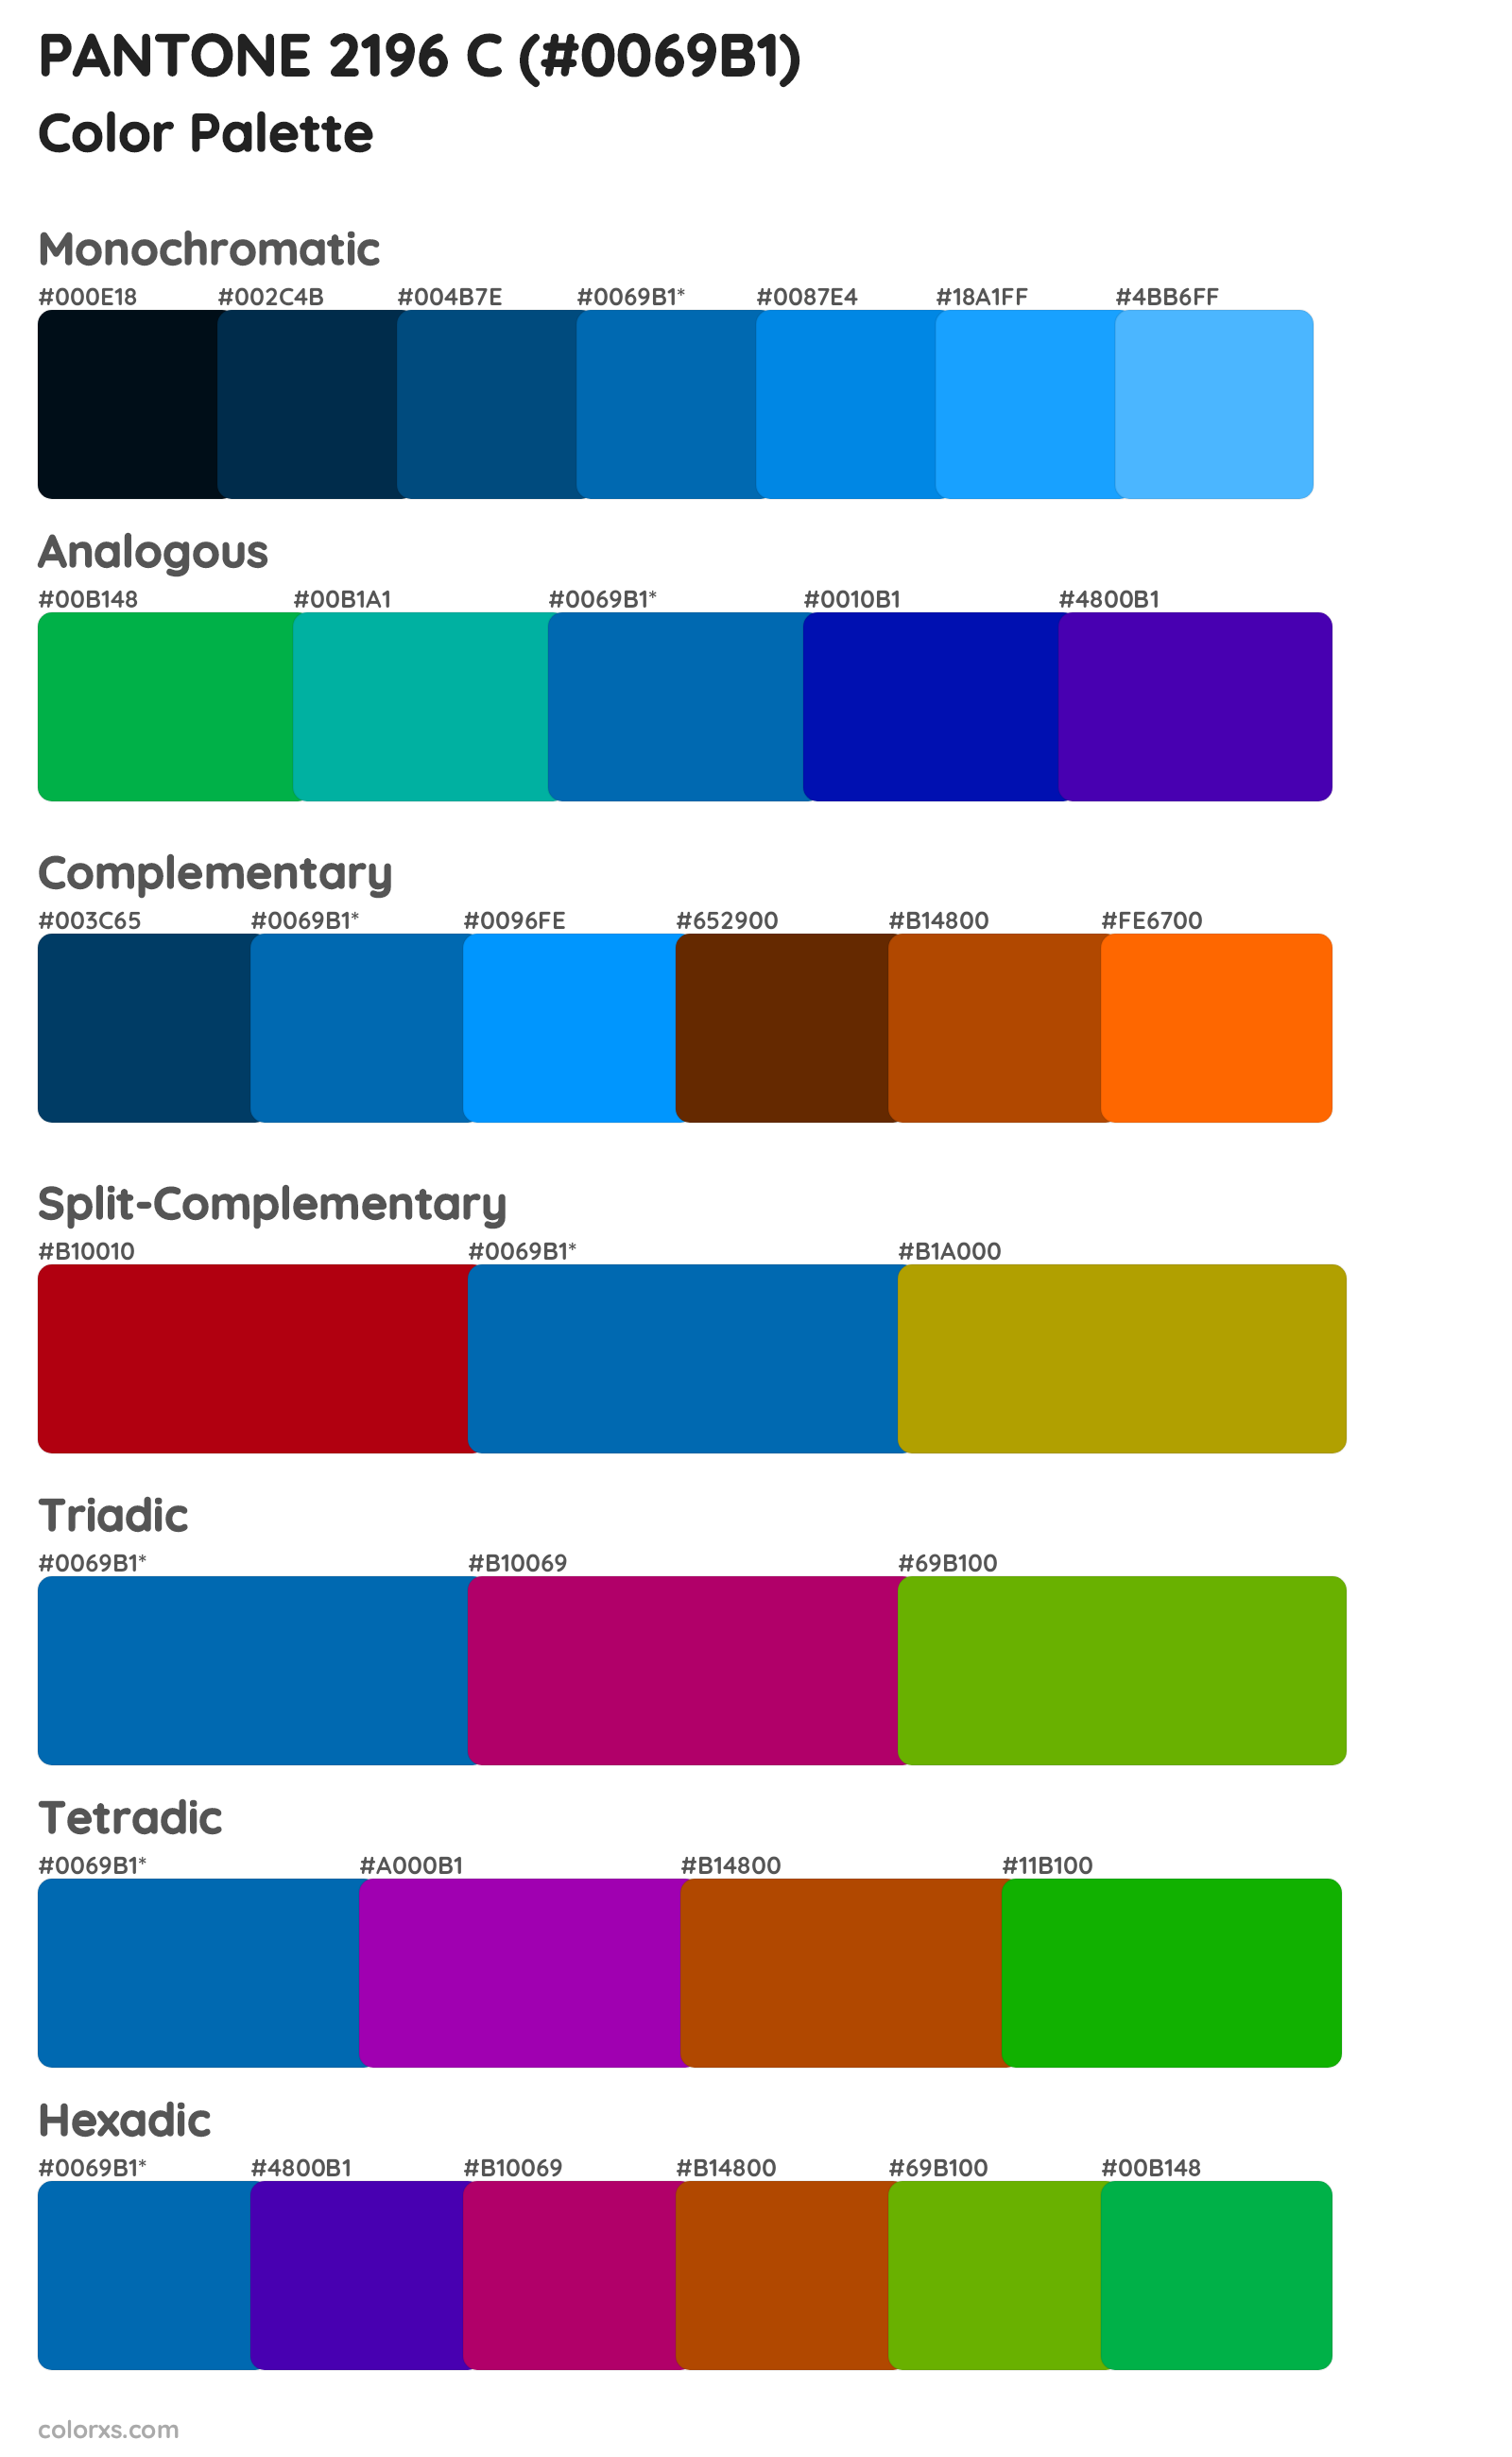 PANTONE 2196 C Color Scheme Palettes